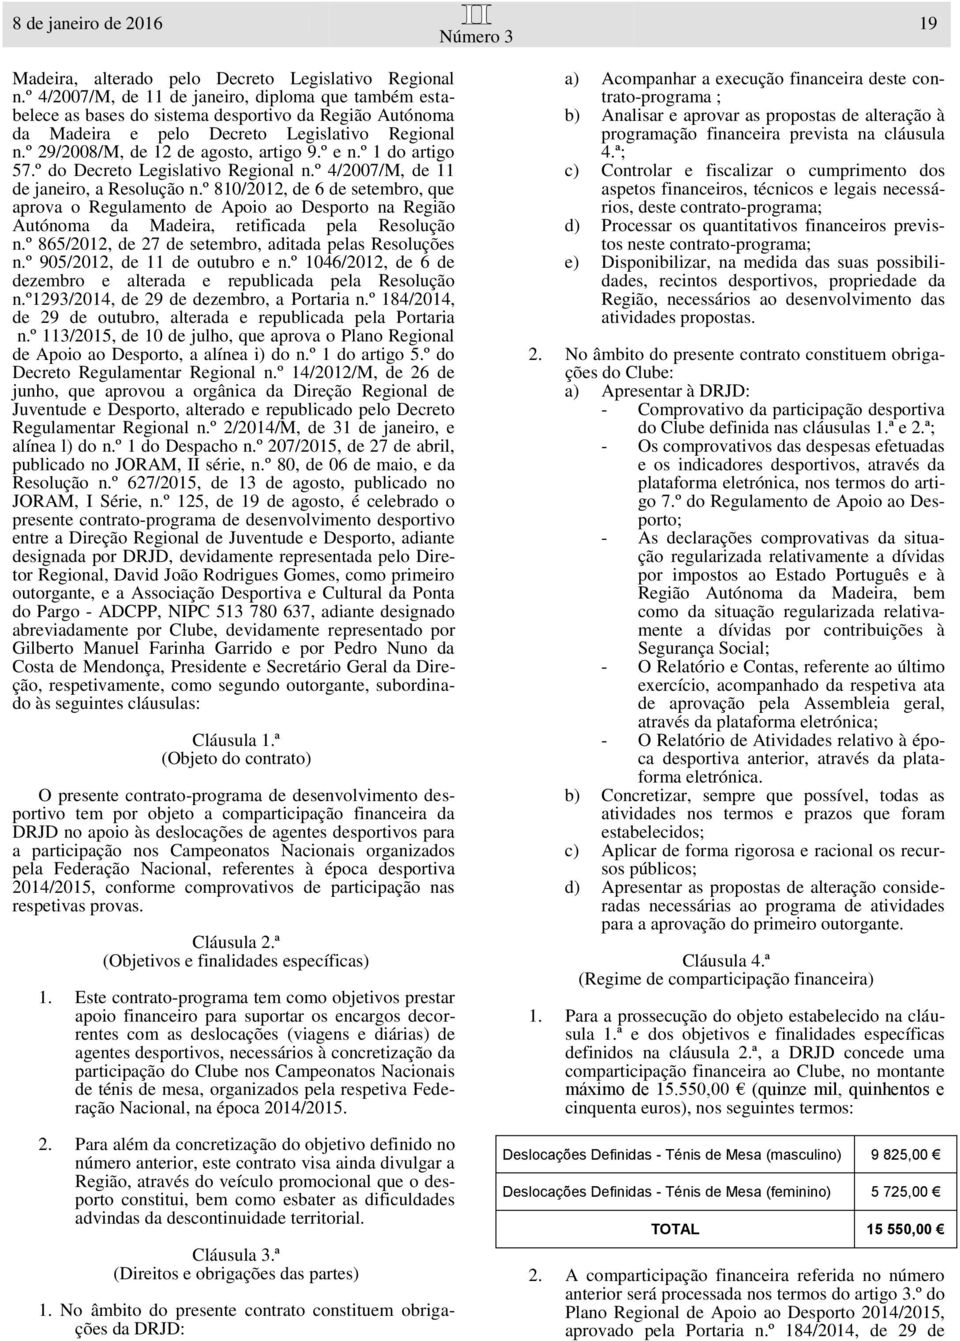 º e n.º 1 do artigo 57.º do Decreto Legislativo Regional n.º 4/2007/M, de 11 de janeiro, a Resolução n.